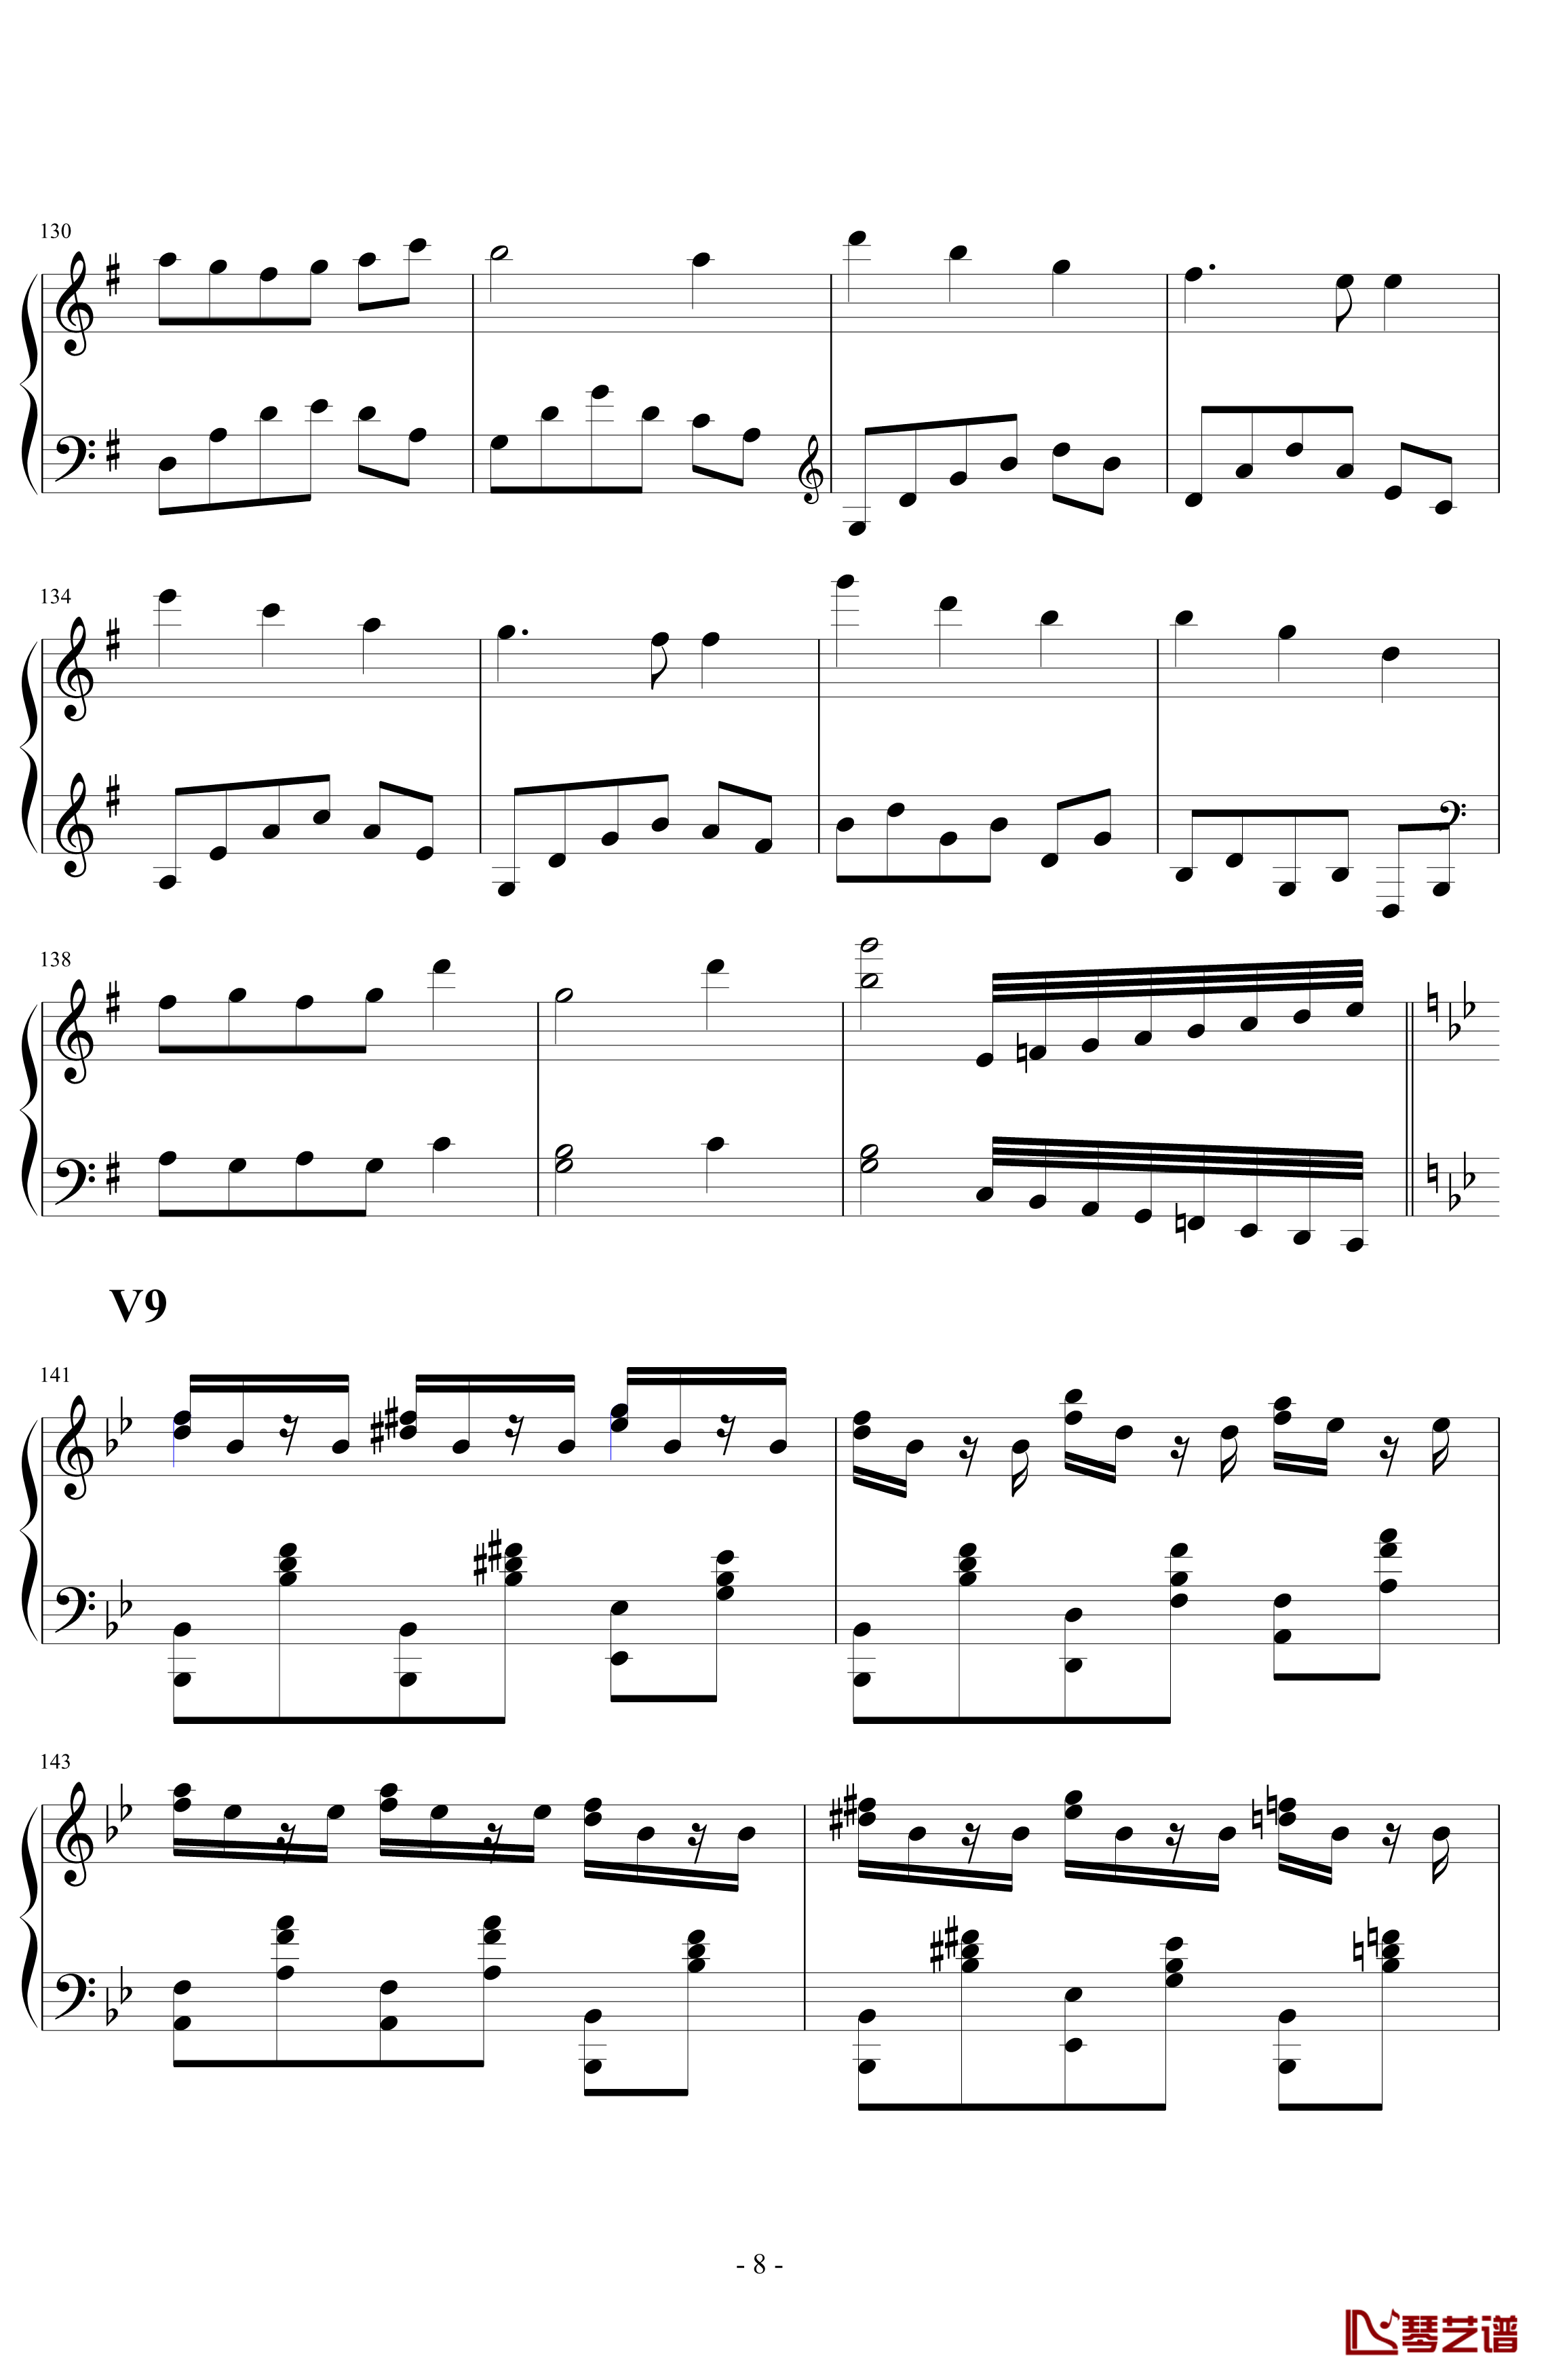 生日歌变奏曲钢琴谱-PARROT1868